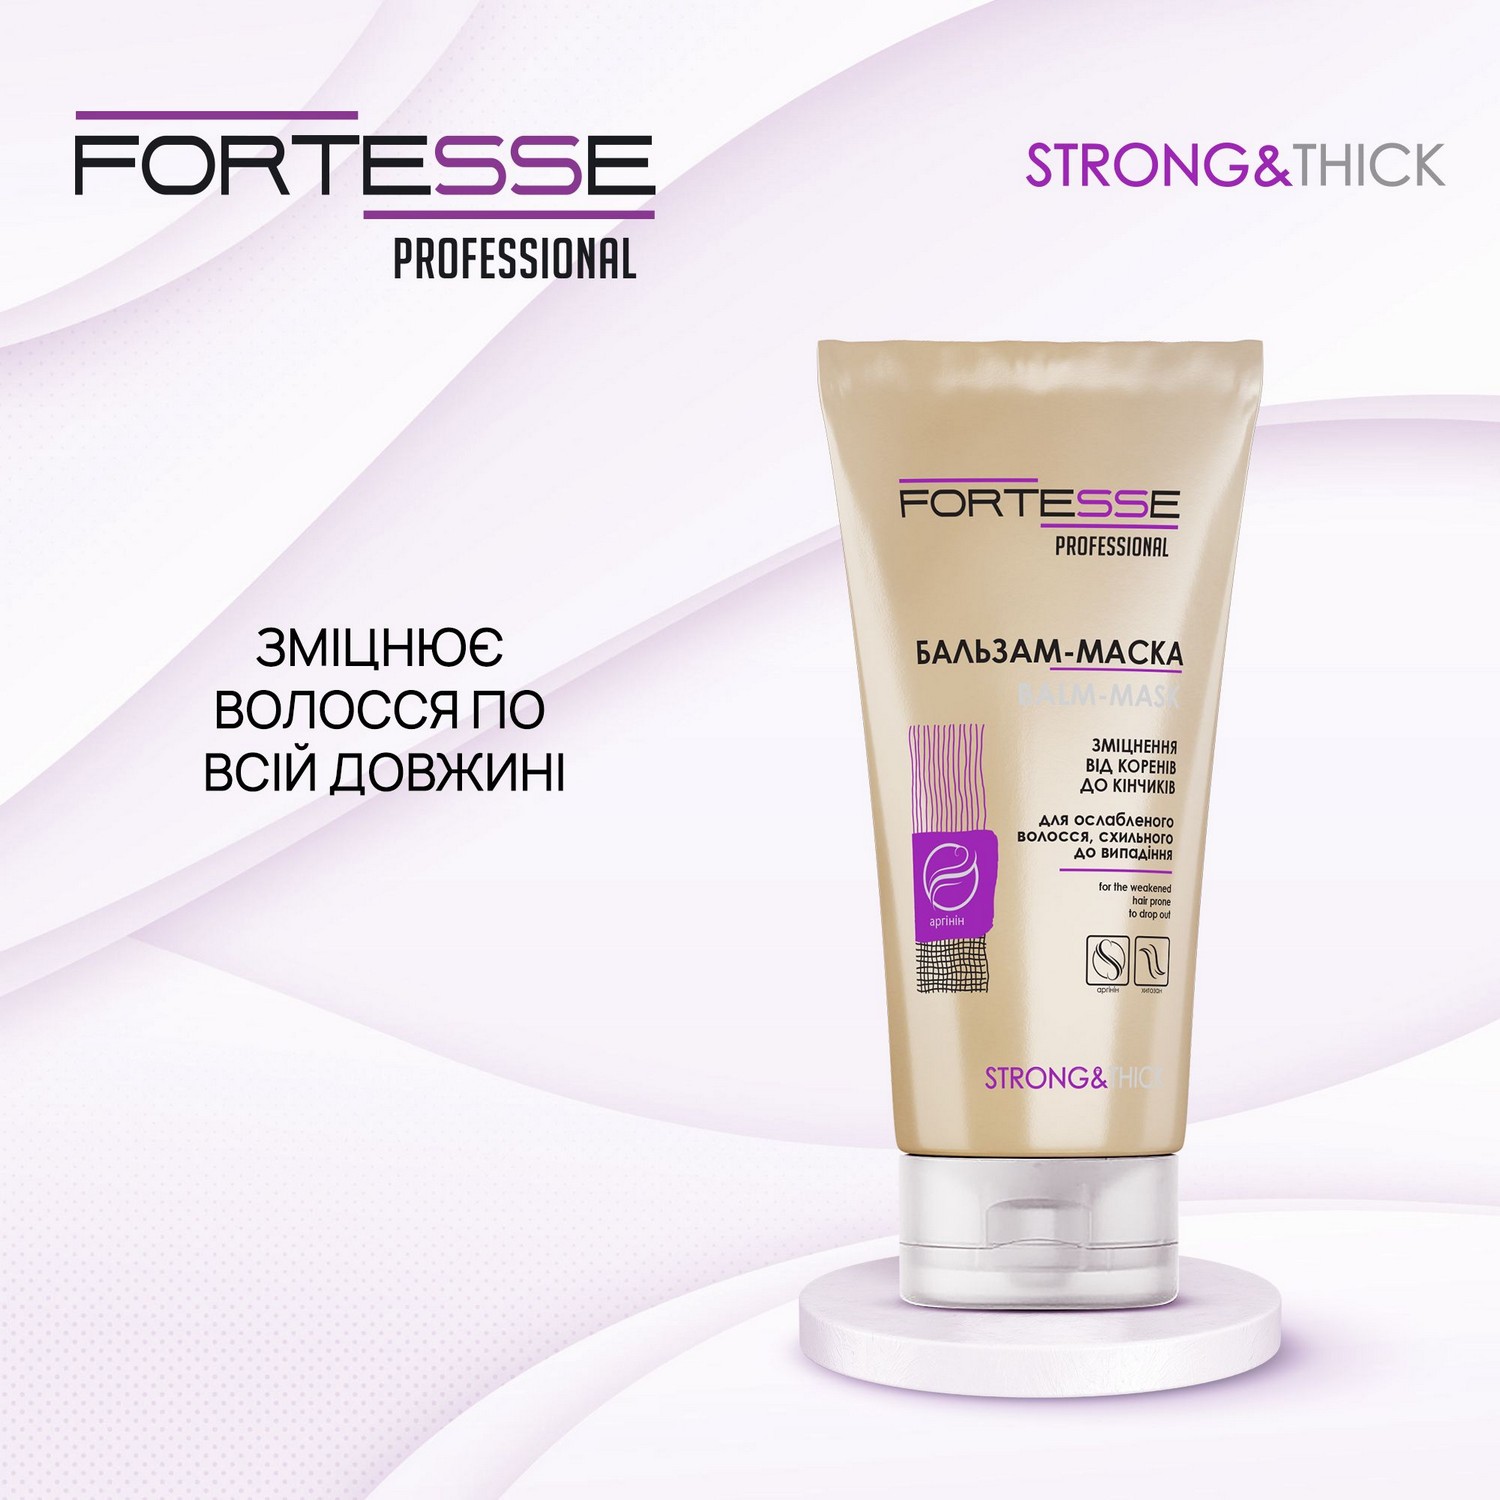 Зміцнююча бальзам-маска Fortesse Professional Strong&Thick для ослабленого волосся, схильного до випадіння, 200 мл - фото 2